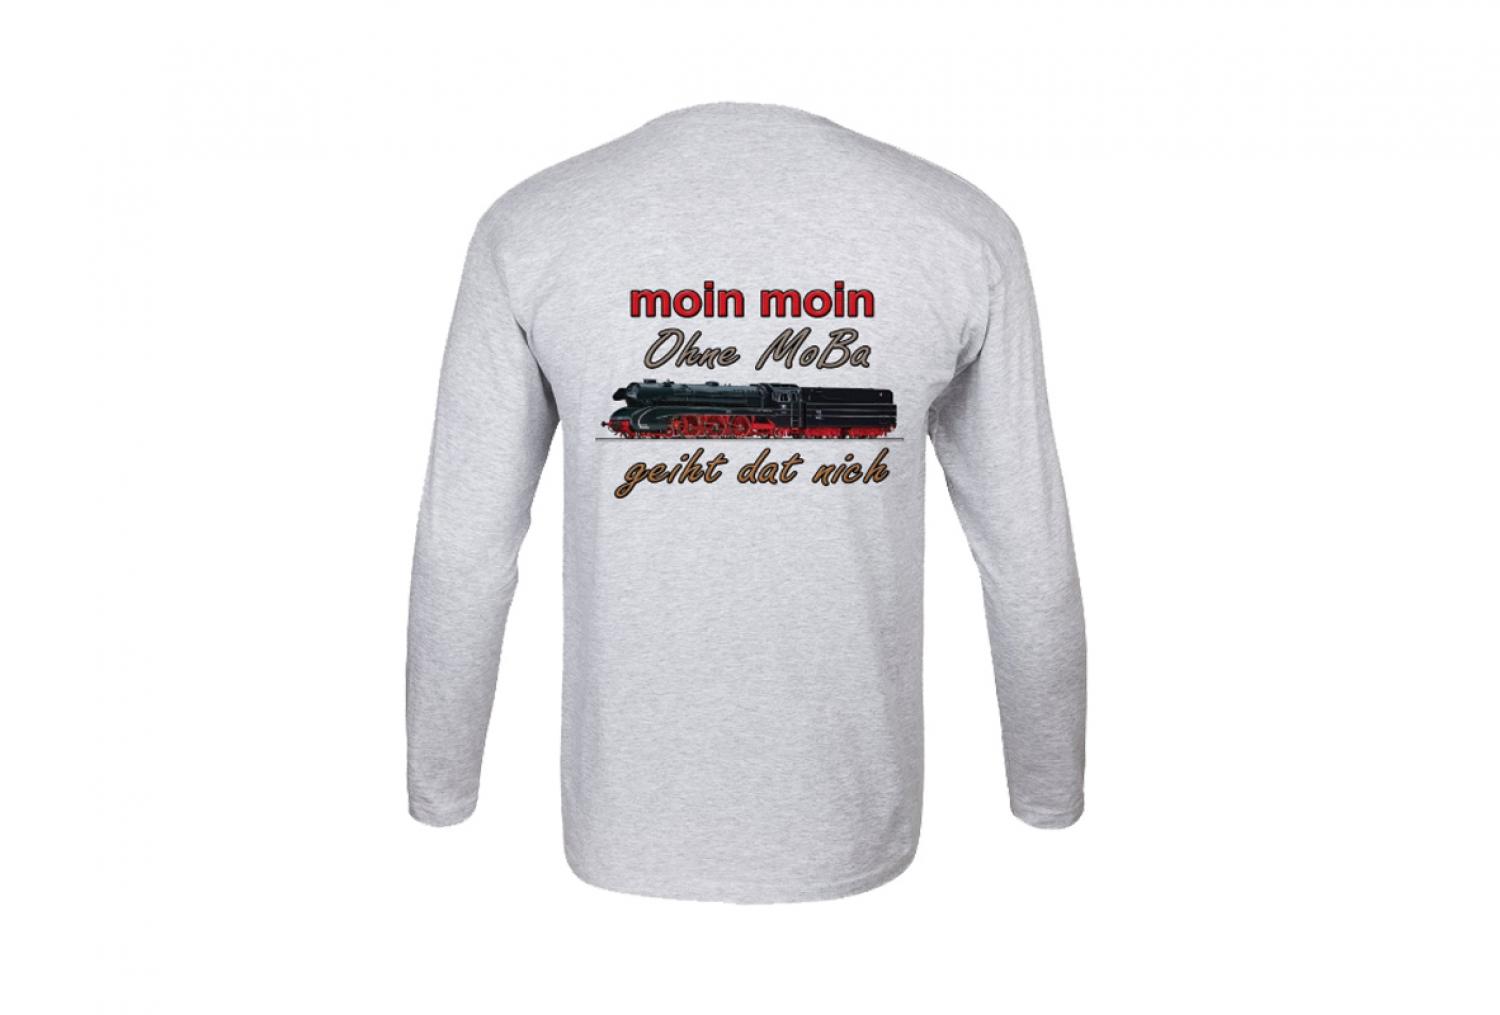 Langarm-Shirt "MoBa 1:87 / Moin Moin" Größe XL